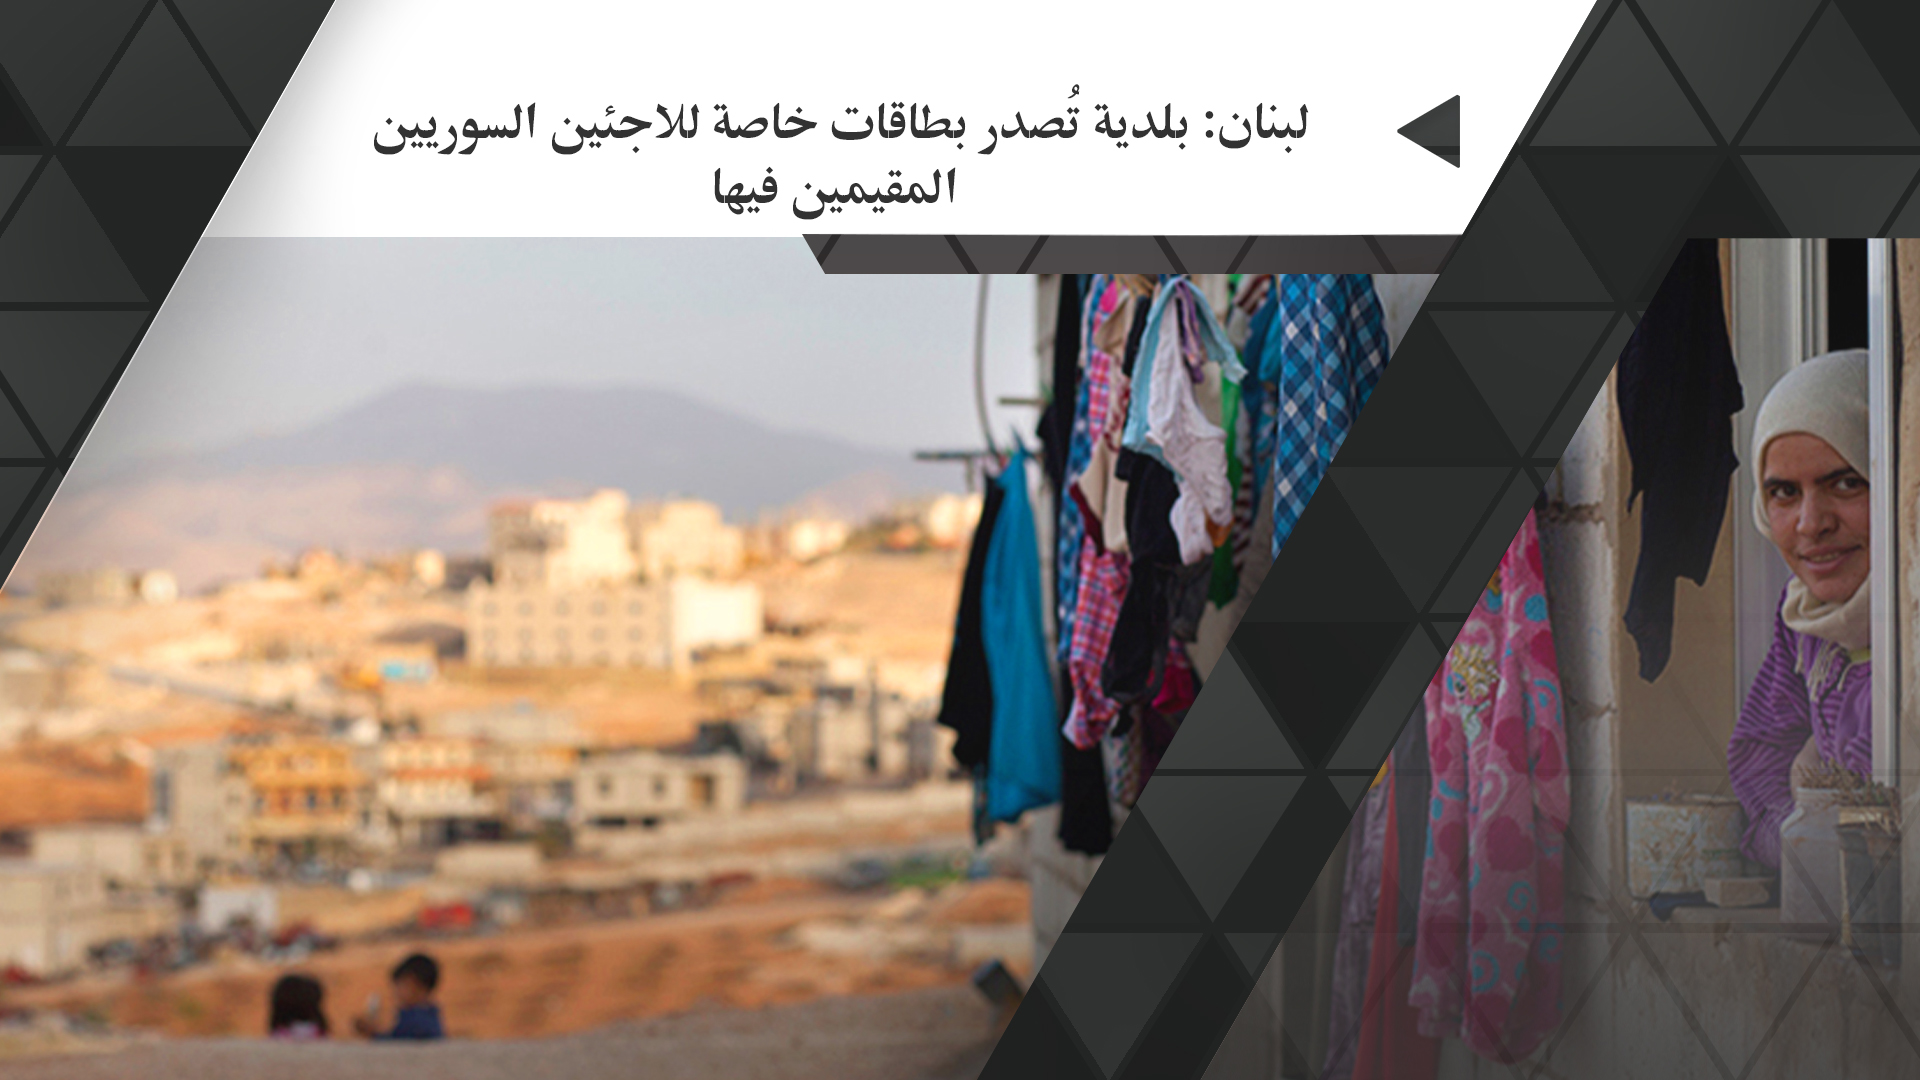 لبنان: بلدية تُصدر بطاقات خاصة للاجئين السوريين المقيمين فيها